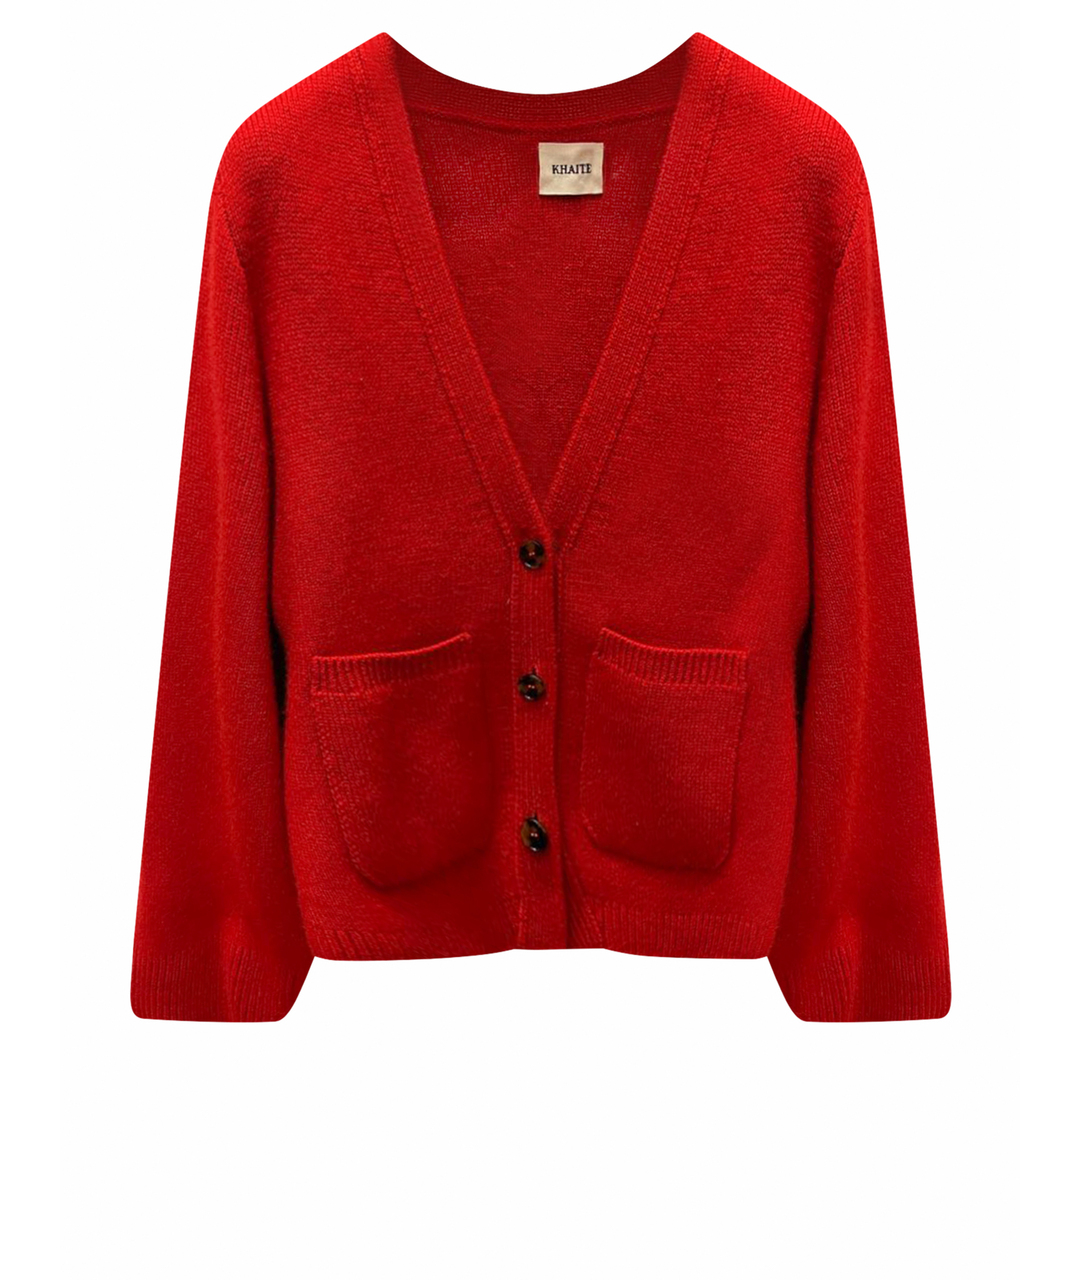 KHAITE Красный шерстяной джемпер / свитер, фото 1